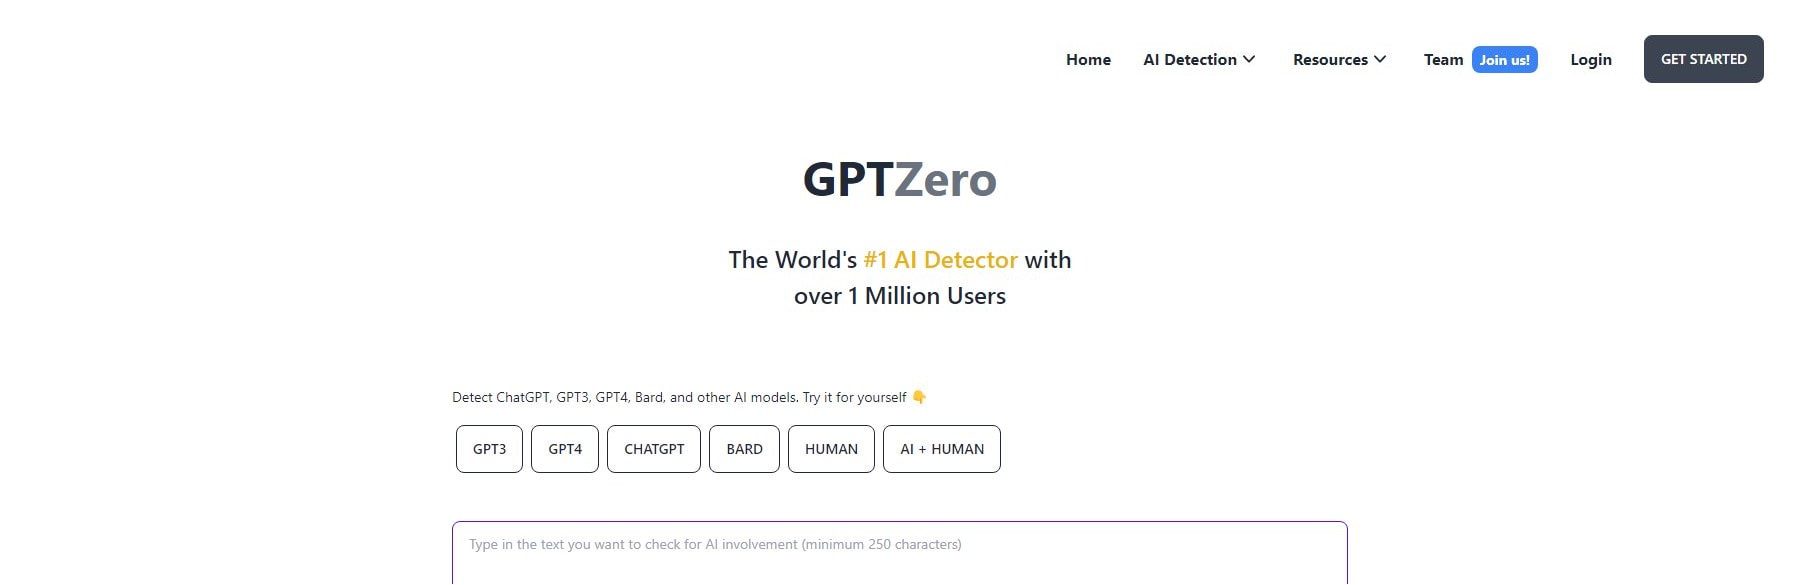 Gptzero - ホームページ 2023 年 5 月